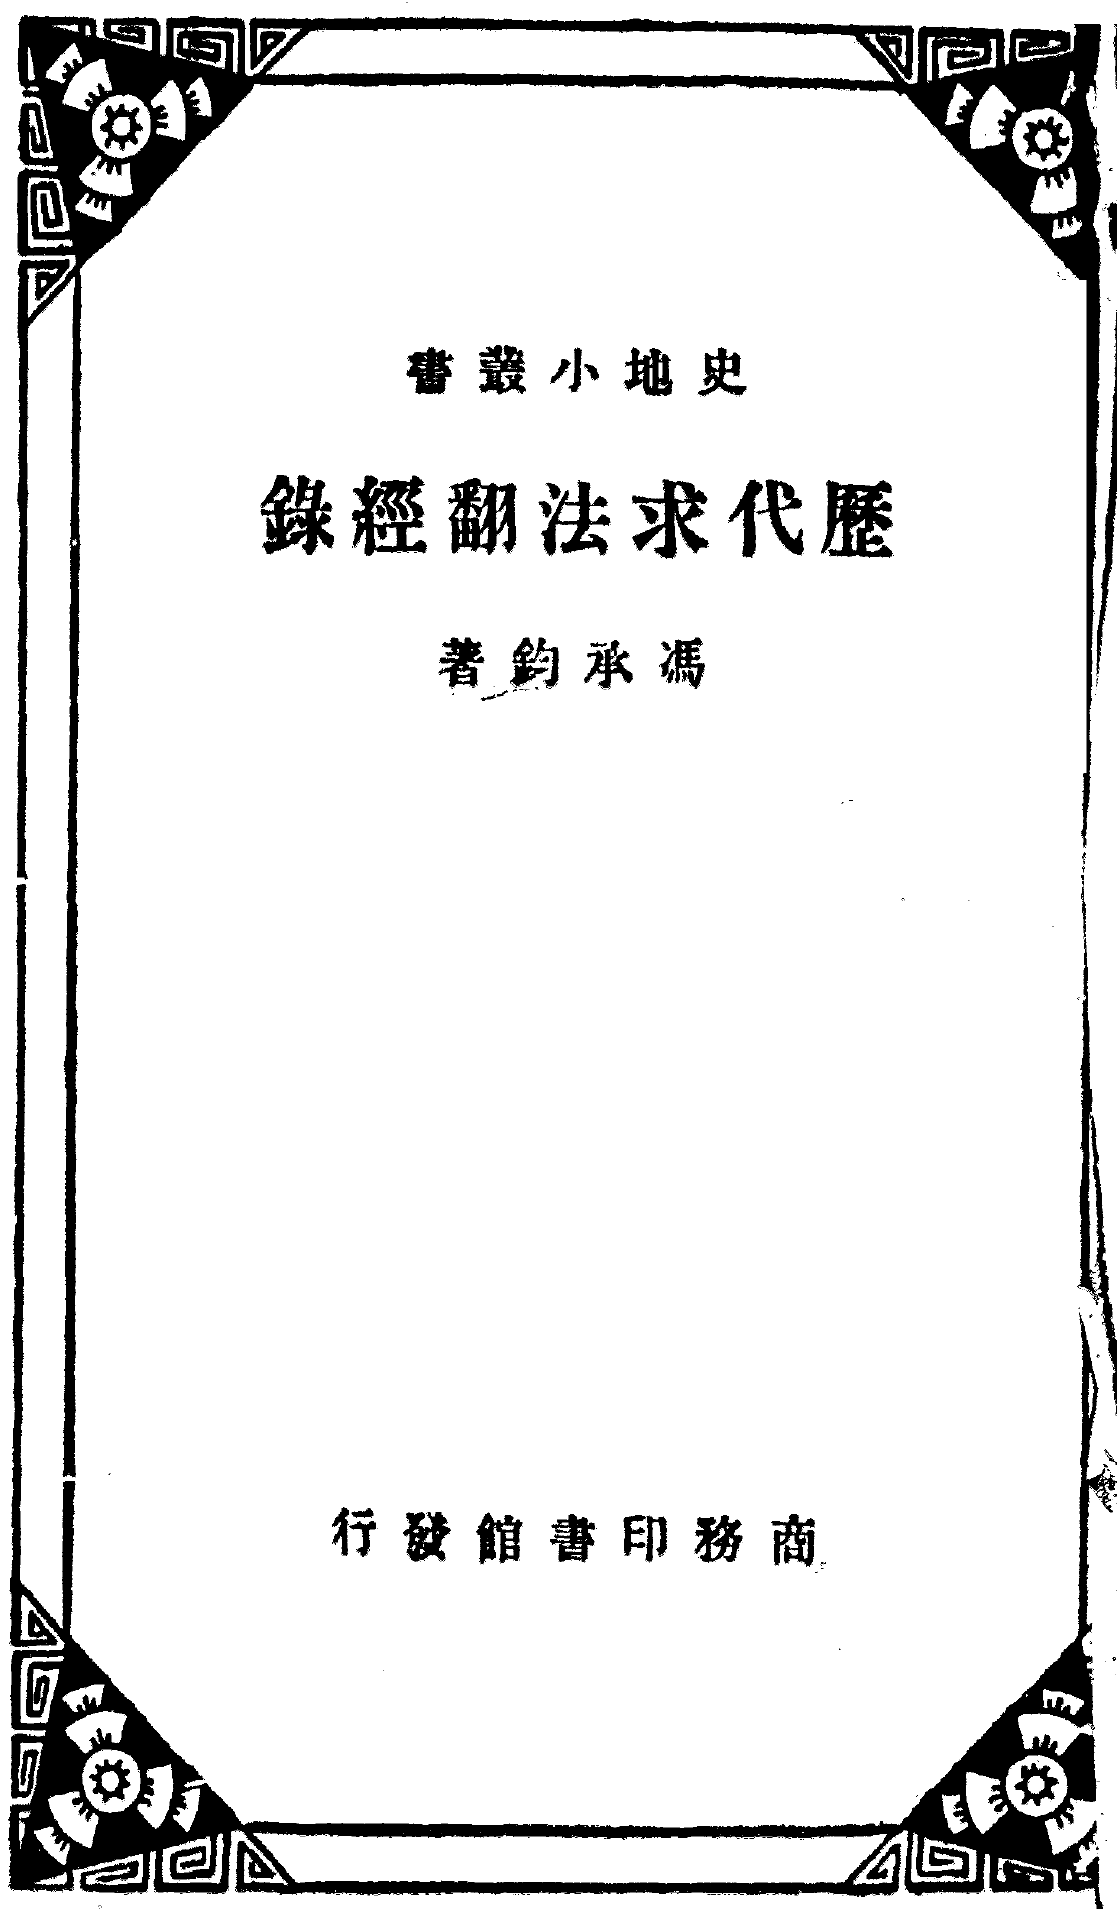 File:Lidai qiufa fanjing lu 1934.png